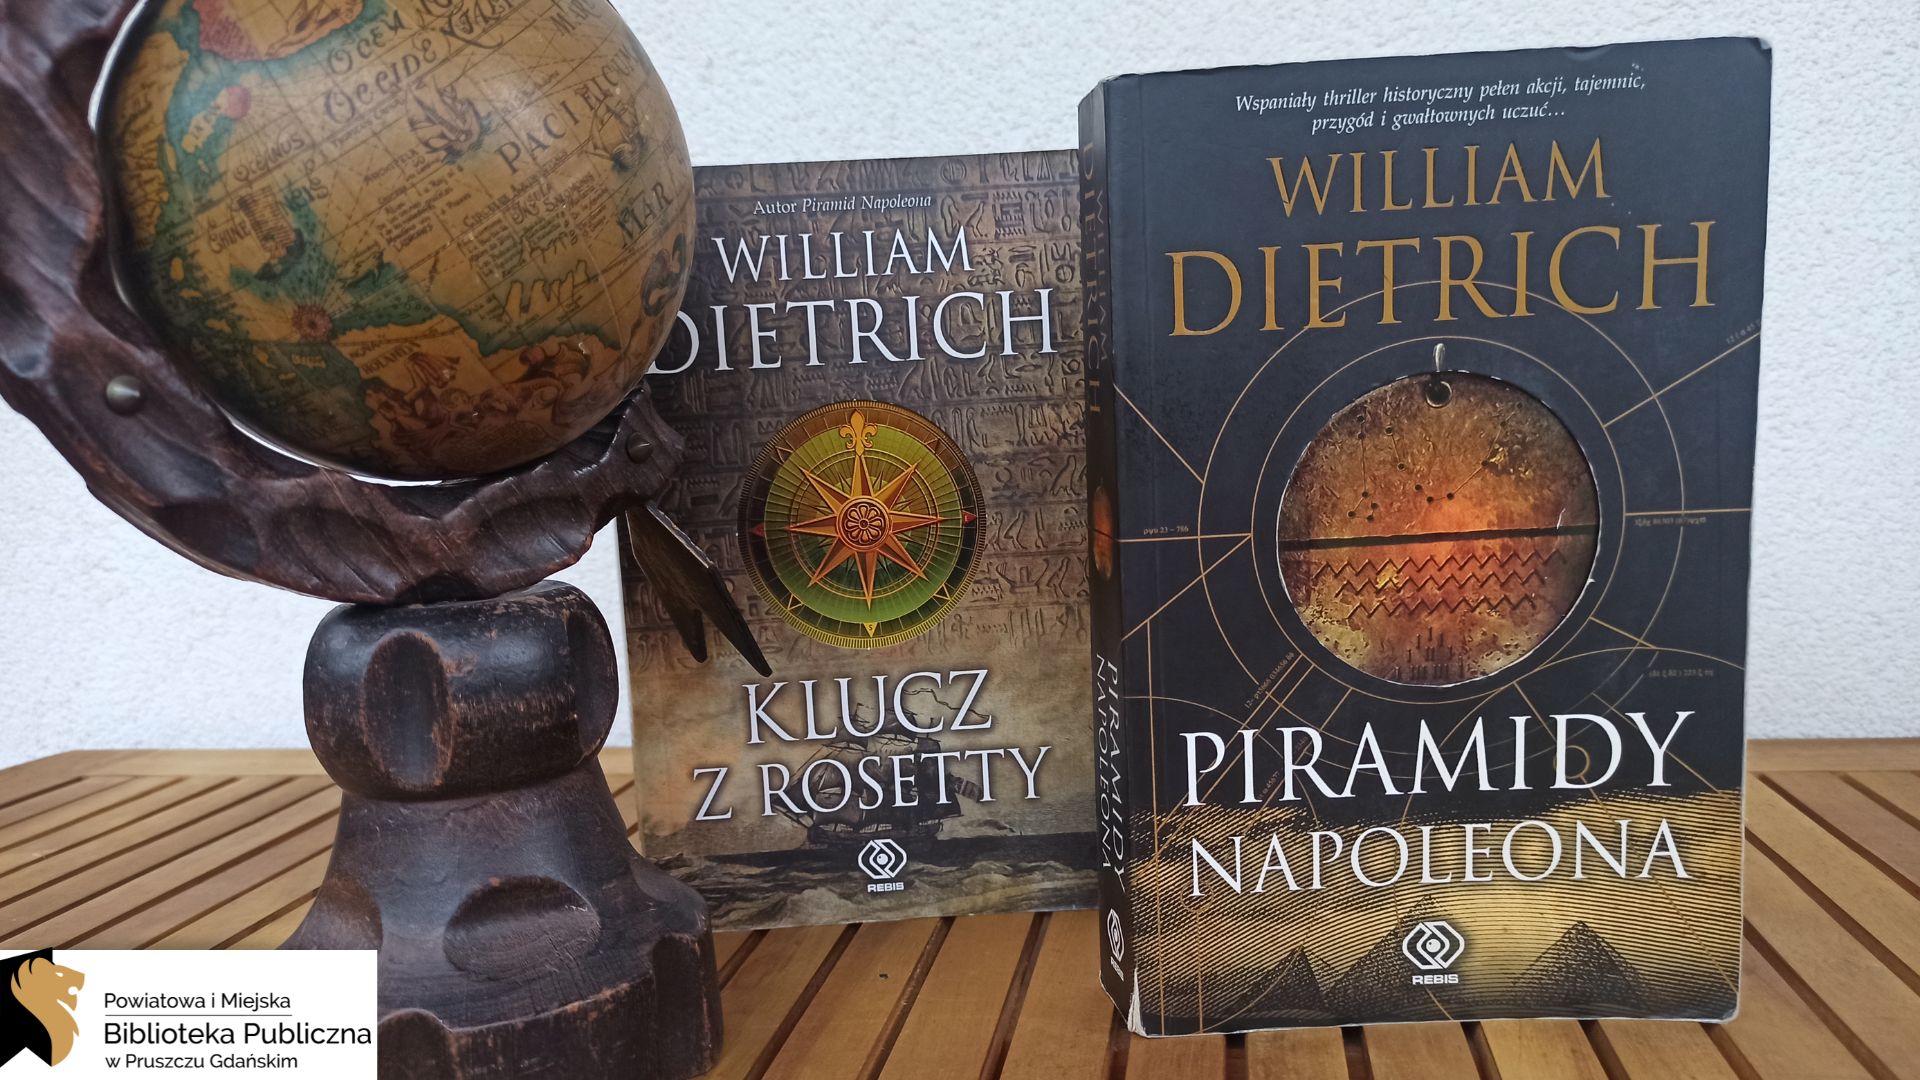 Przy starym globusie pokazującym nieaktualny obraz Ziemi stoją dwie książki: Piramidy Napoleona oraz Klucz z Rosetty.